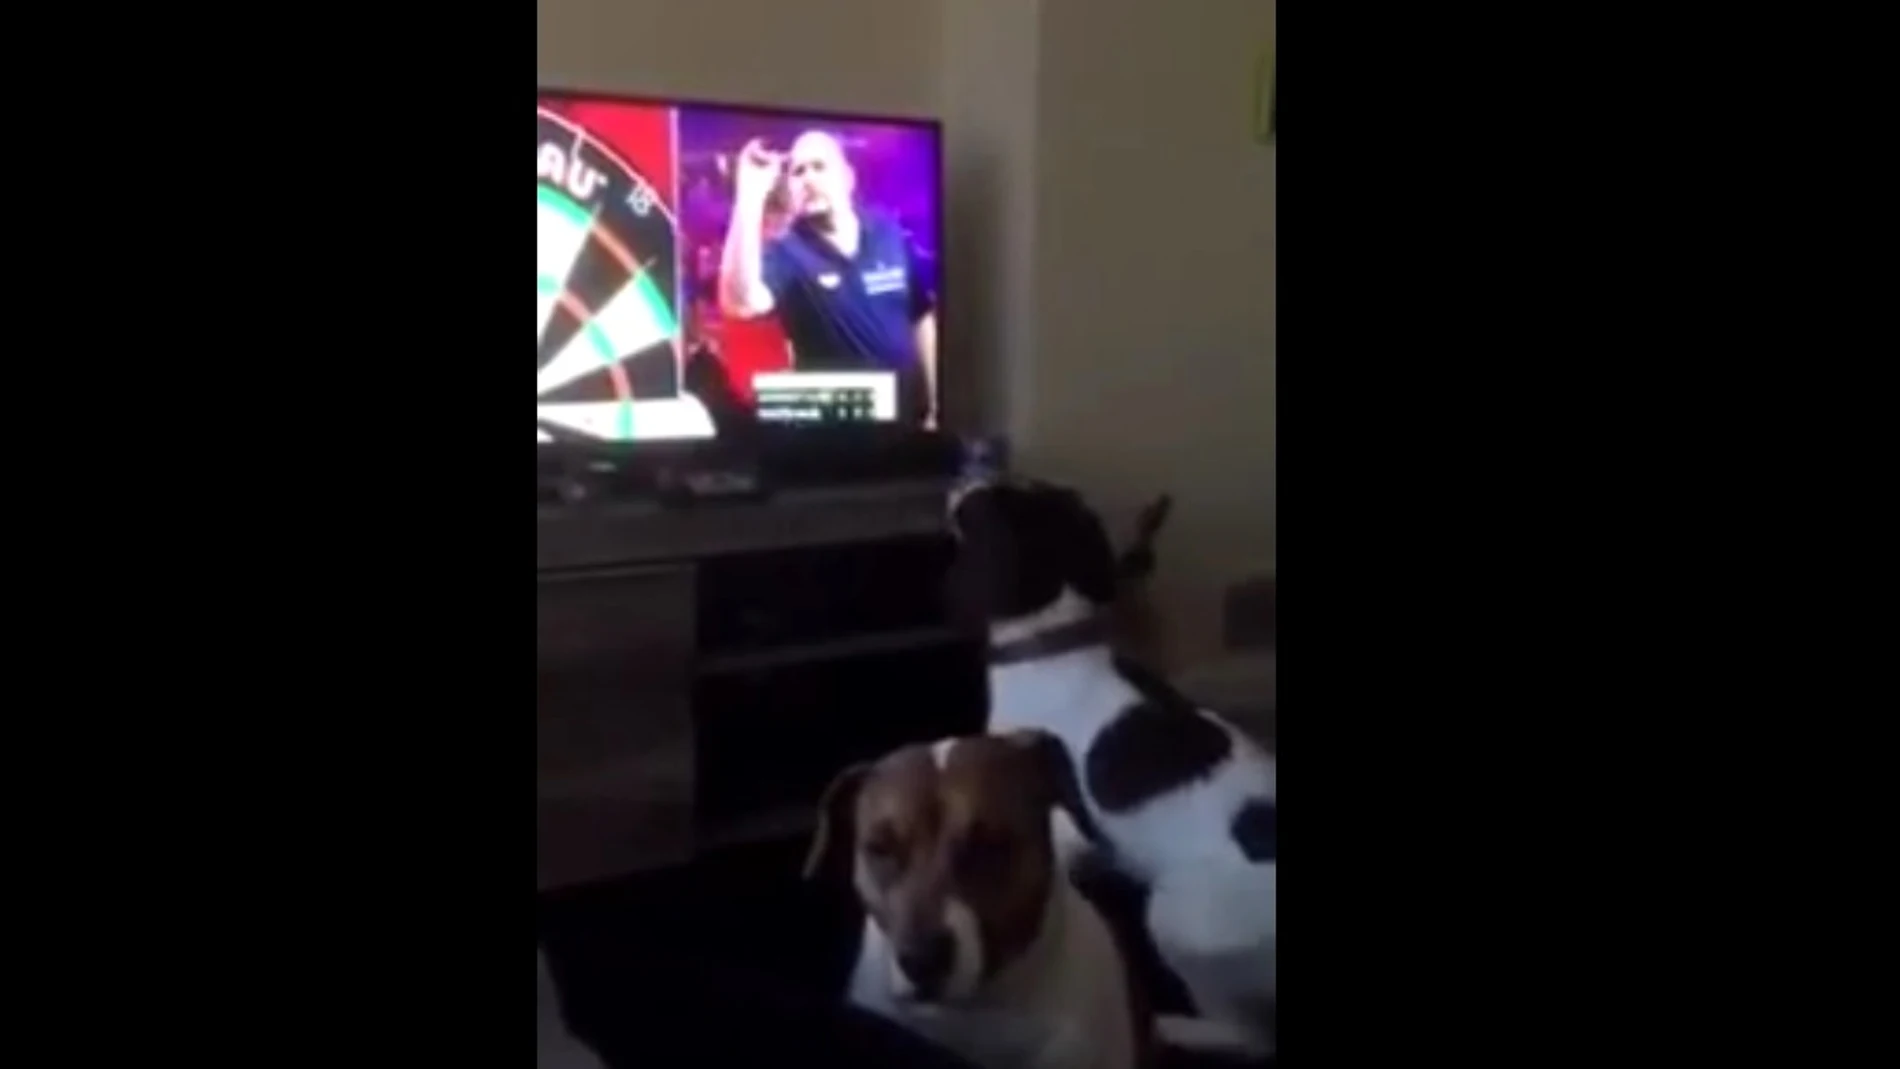  Un perro se vuelve loco persiguiendo dardos lanzados en televisión y se convierte en viral